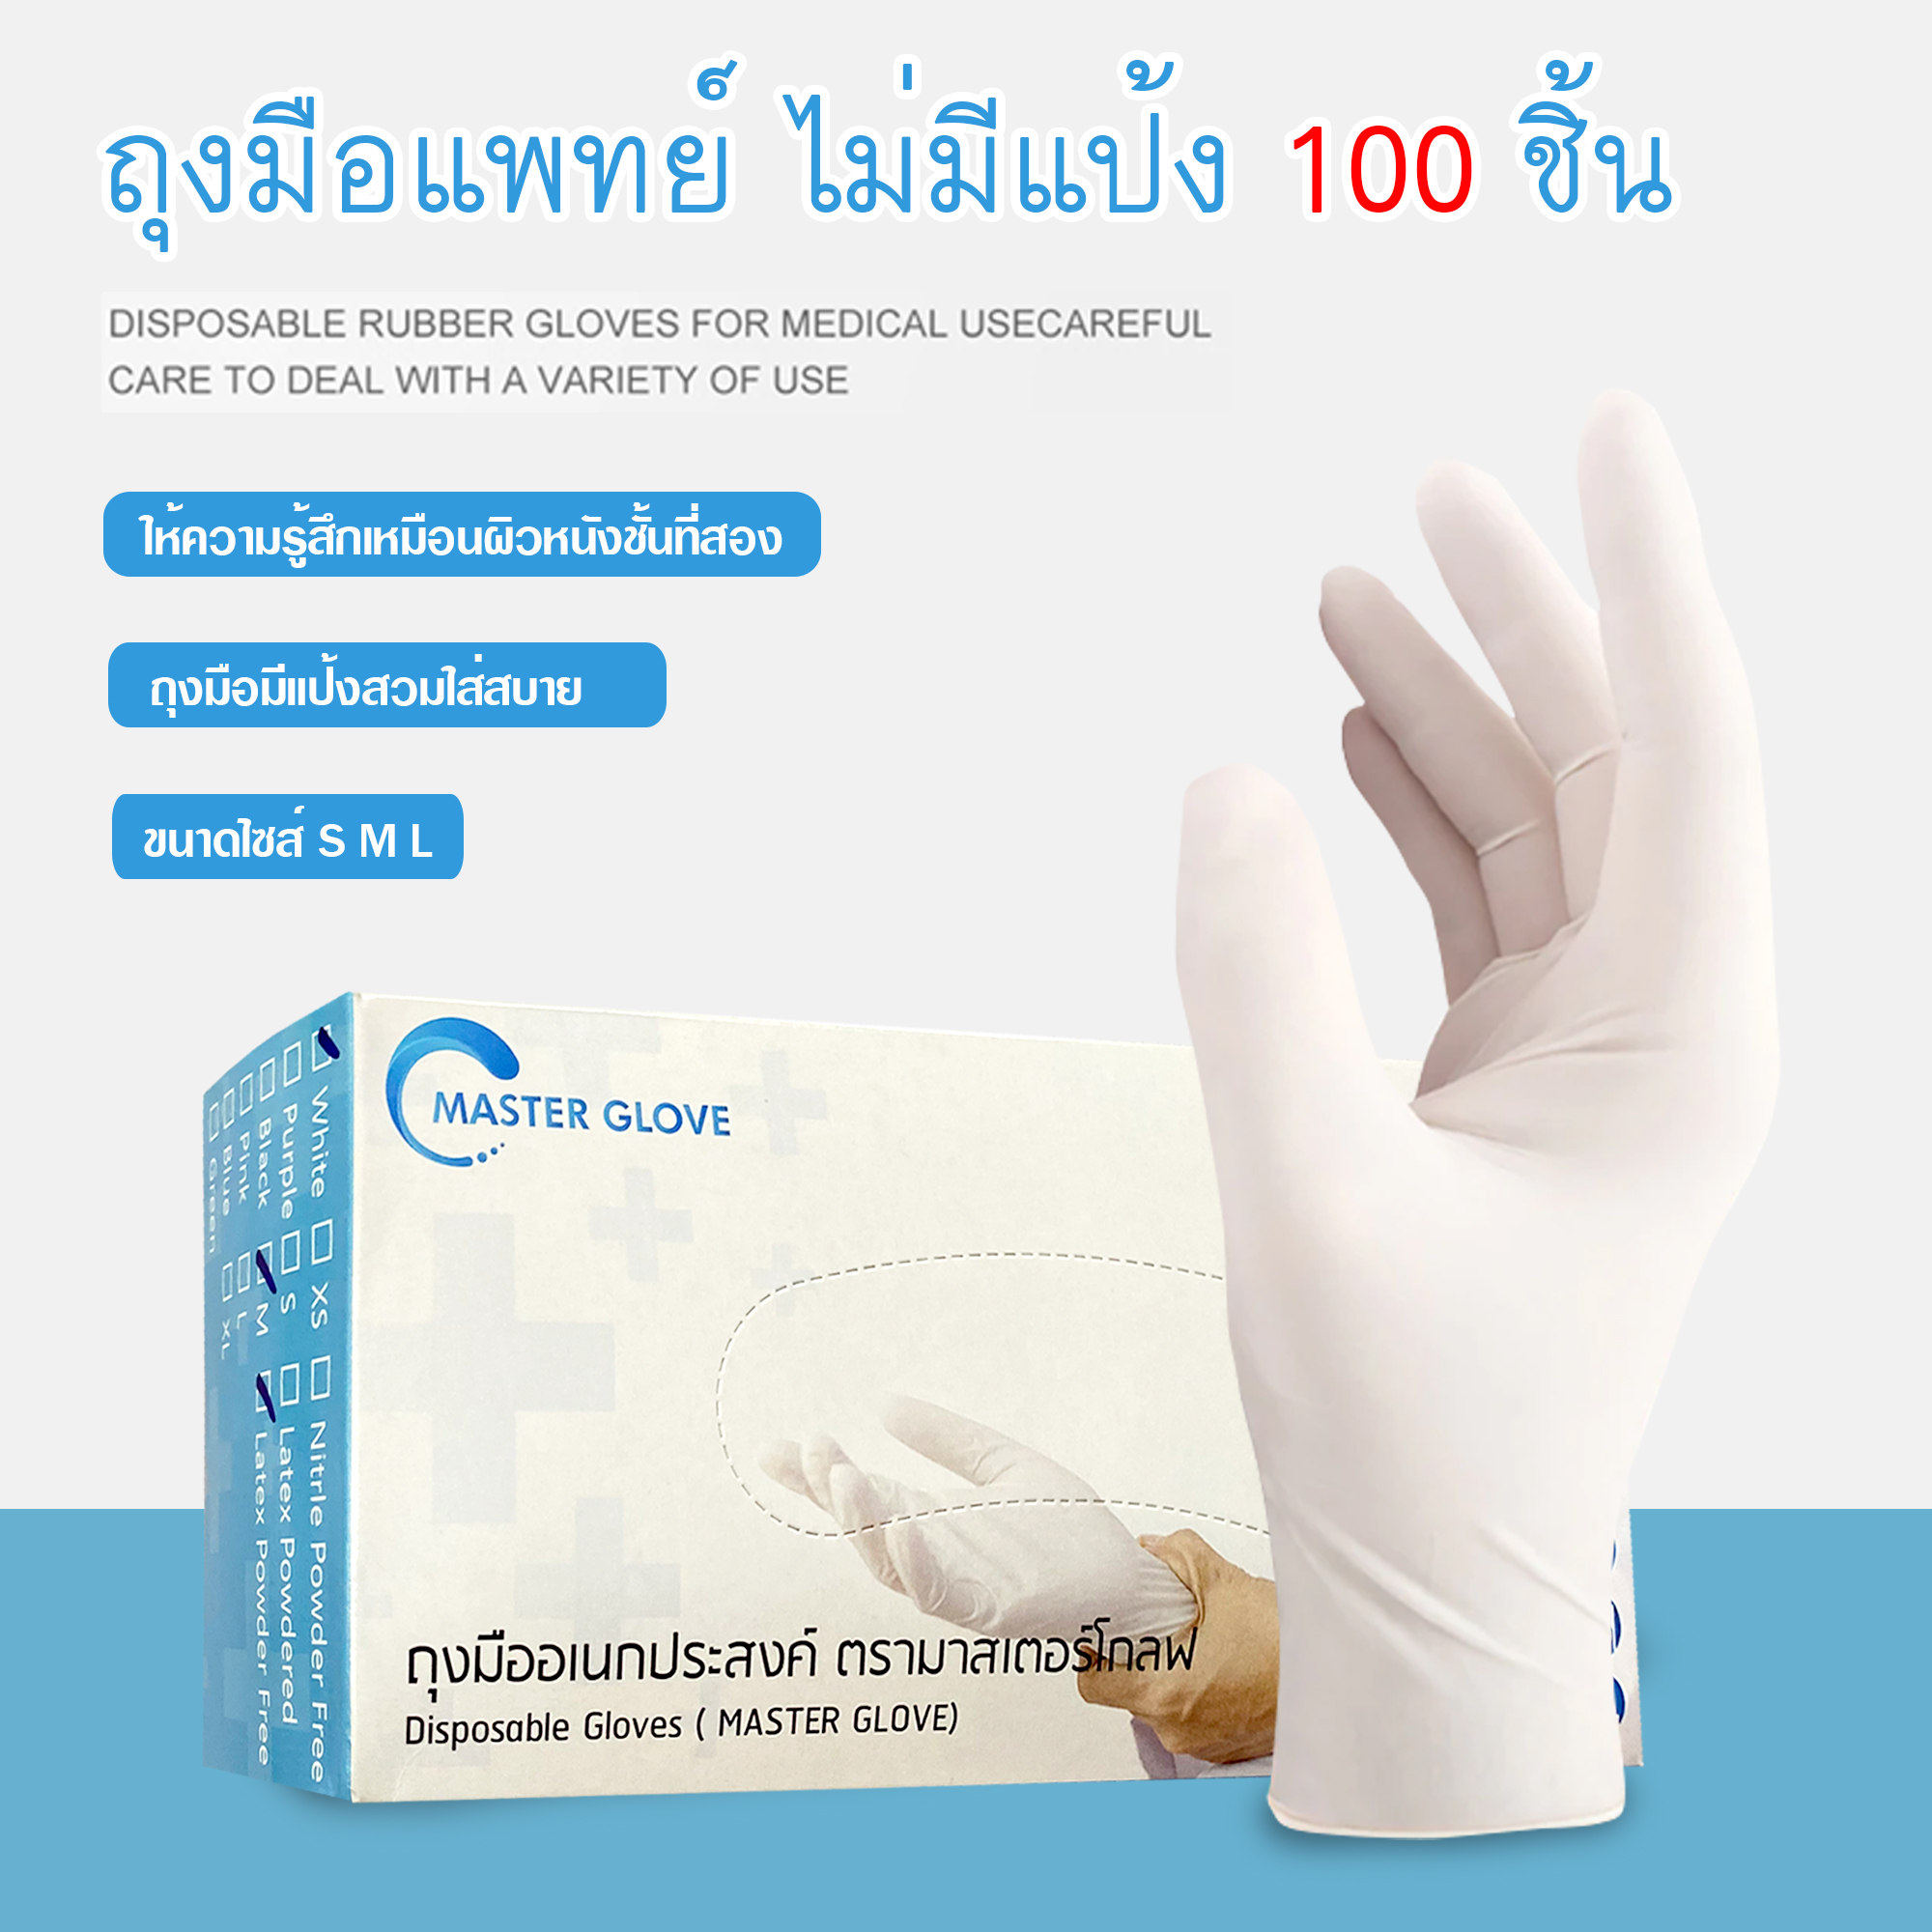 (ไม่มีแป้ง) ถุงมือแพทย์แบบไม่มีแป้ง ถุงมือยาง ถุงมือตรวจโรค ถุงมืออเนกประสงค์ สัมผัสอาหารได้ (100 ชิ้น/กล่อง) (Powder Free)